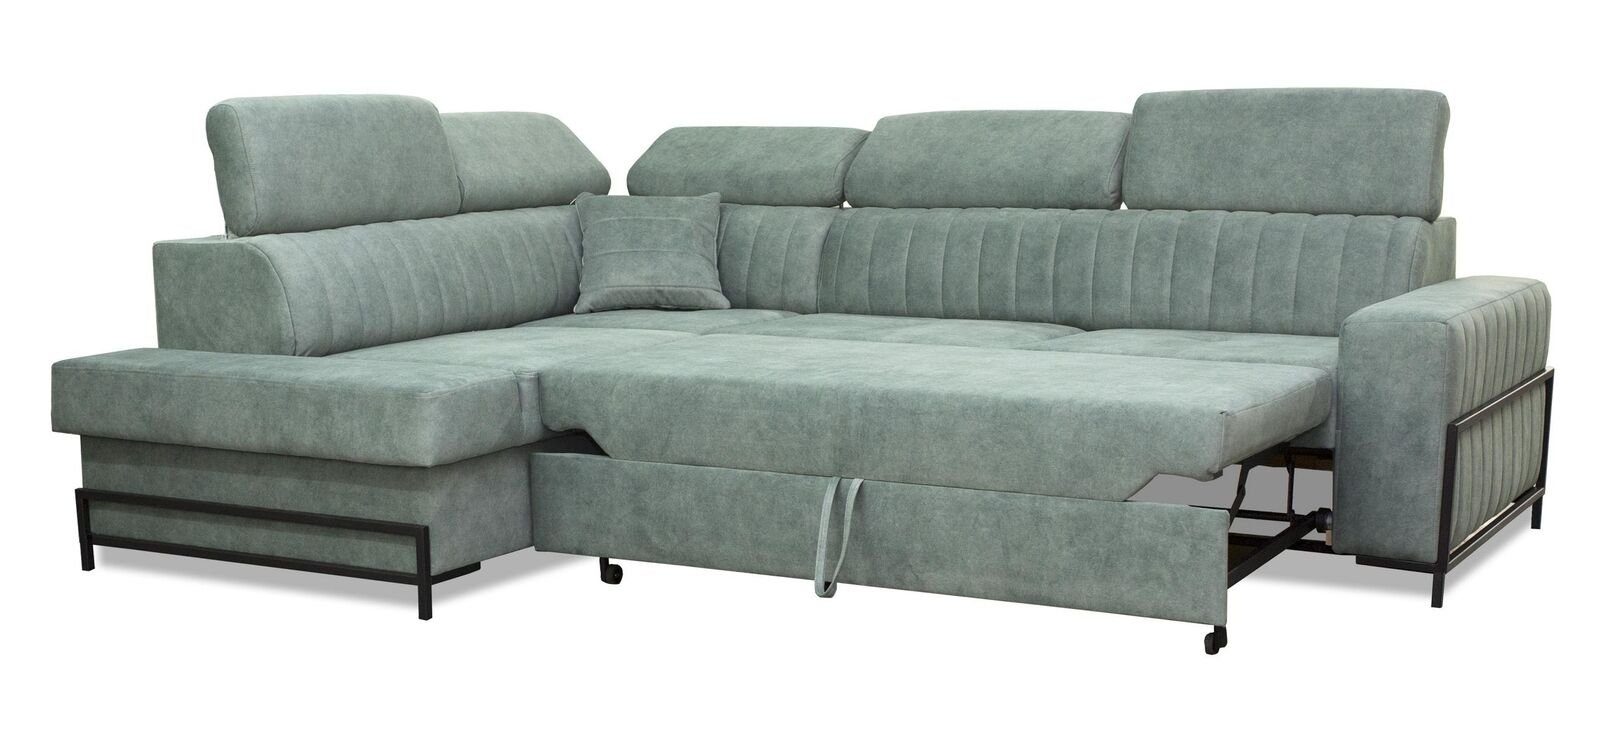 JVmoebel Ecksofa, Wohnzimmer Stoff L-Form Modern Textil Ecke Design Luxus Couch Sofa